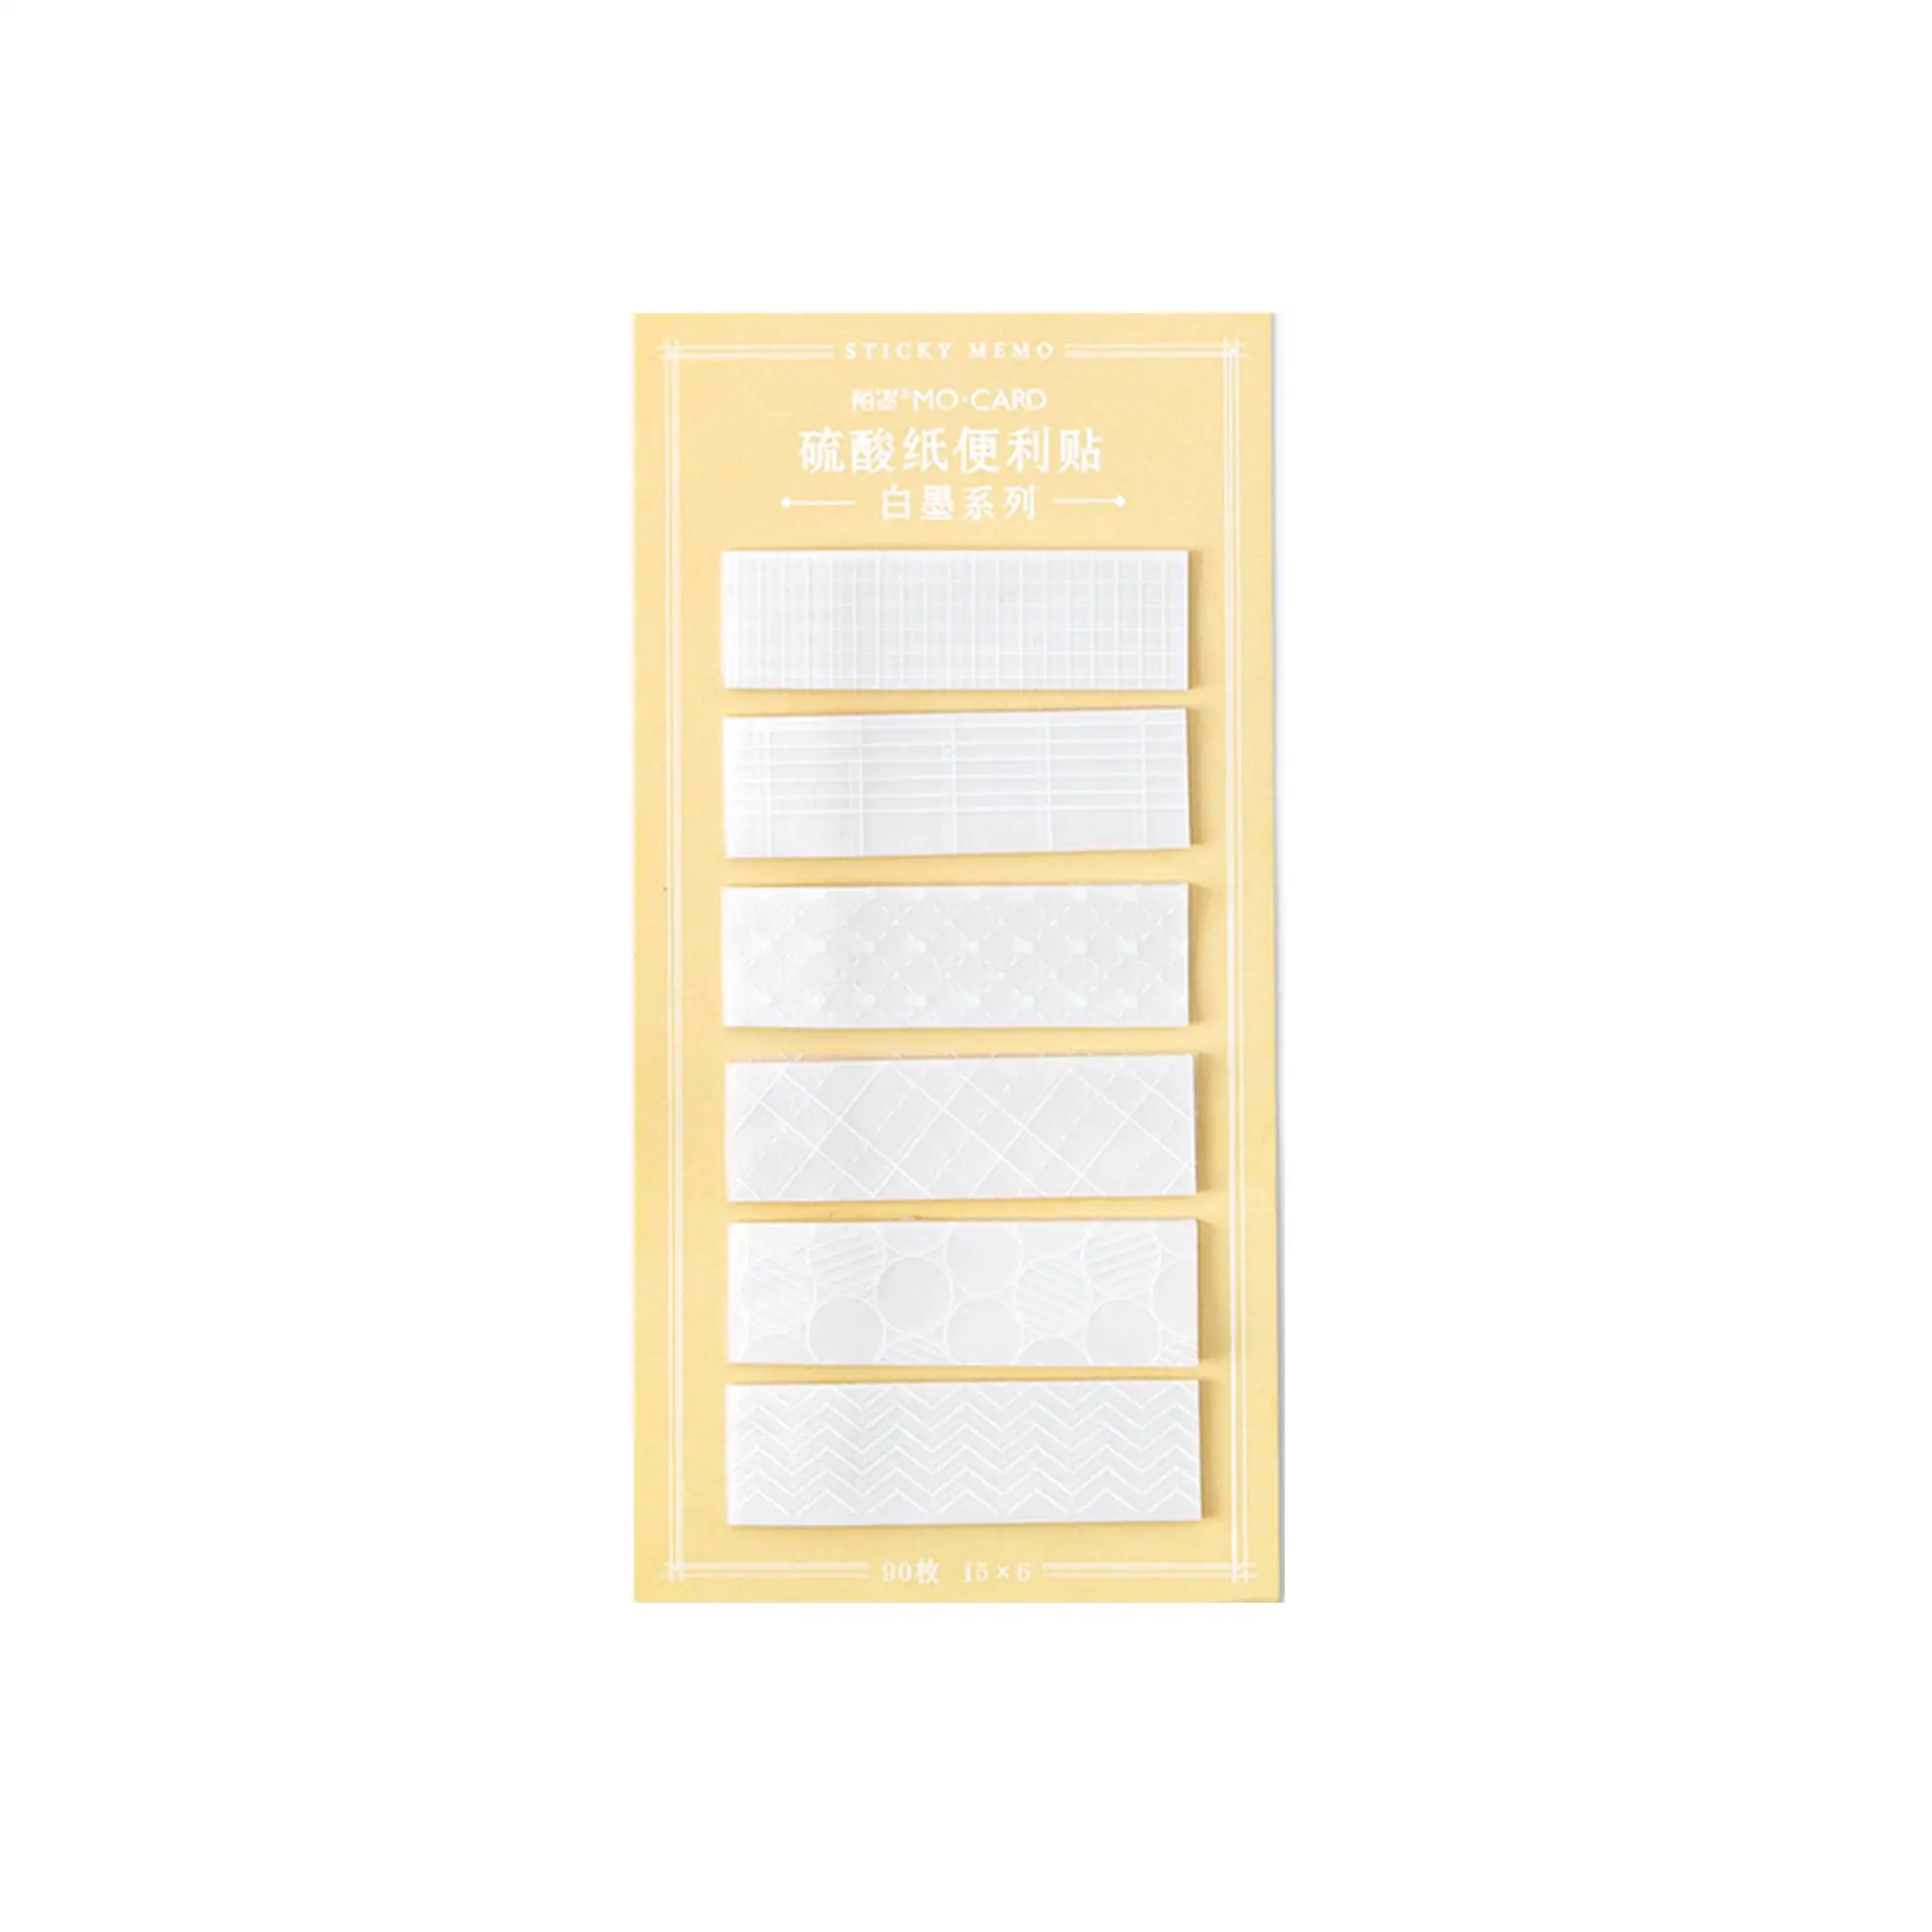 90 листов/уп Винтаж бумаги для заметок на клейкой основе индекс флажки для вкладок бумага из блакнота для Page Maker селфи-Палка с этикетки ежедневно еженедельно для планирования расписания наклейки - Цвет: E